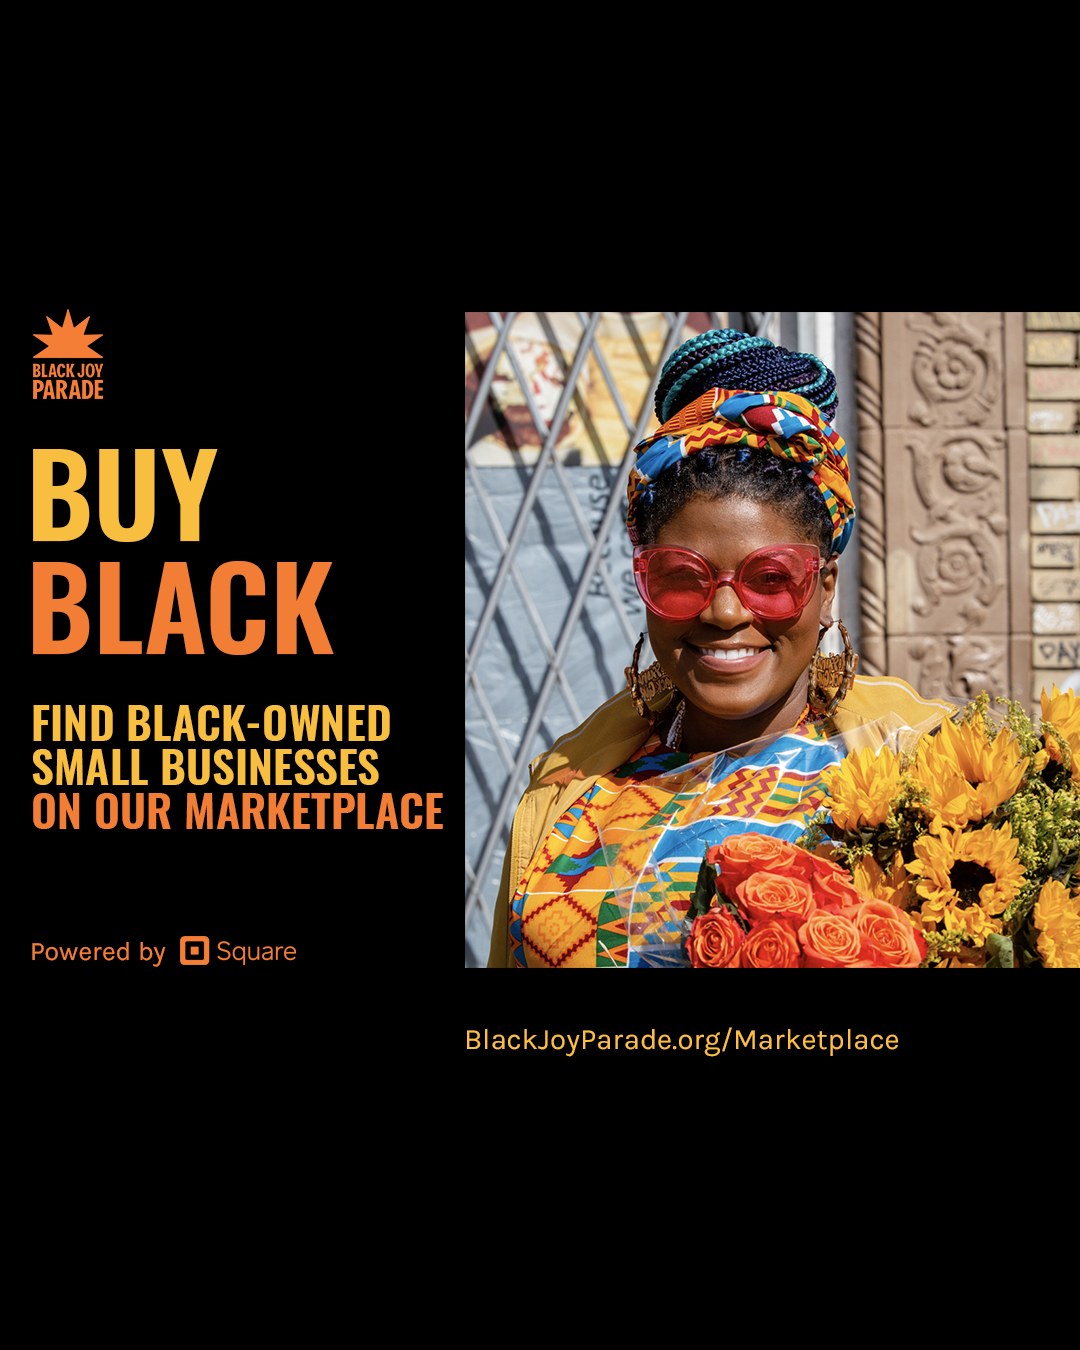 BJP Marketplace 1 -BUY BLACK- IG (Conflicted copy from Lauren Rascoe’s MacBook Pro (2) on 2021-01-30).png